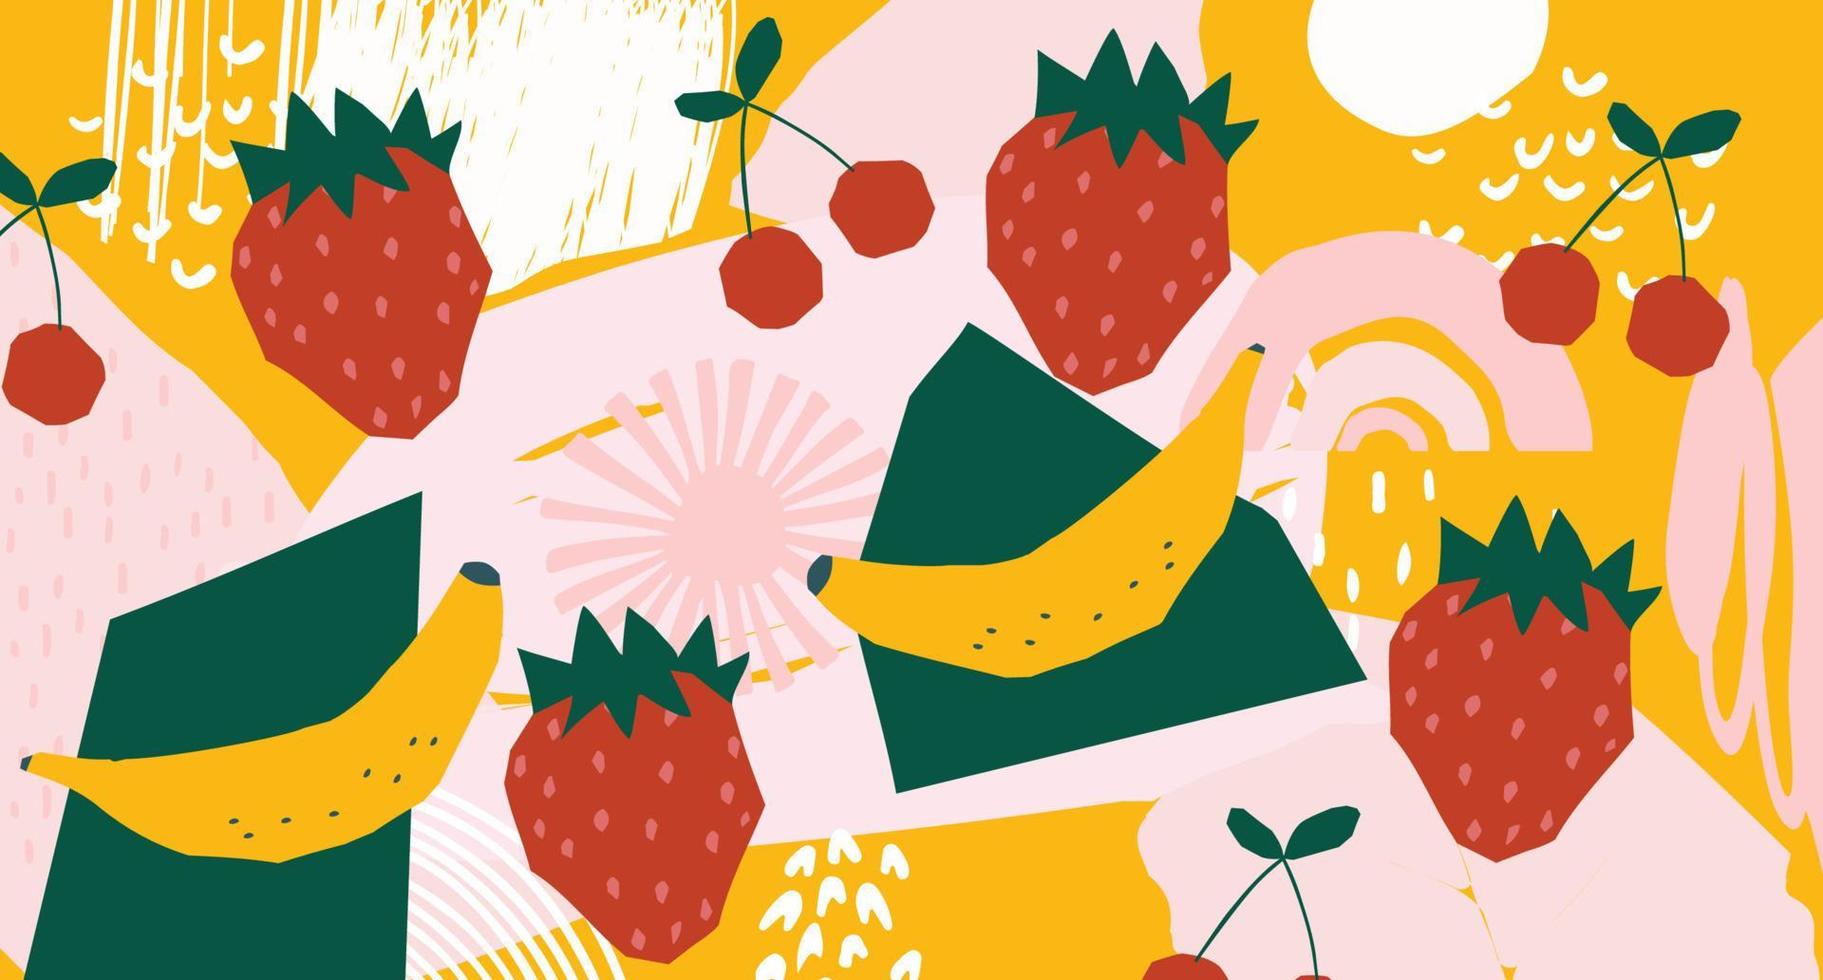 aardbei, banaan, kersenfruit mix poster. zomer tropisch ontwerp met fruit. banner voor bar, cocktail, milkshake poster. ontwerp voor menu, verpakking, stof. gezonde voeding, veganistisch voedselconcept vector